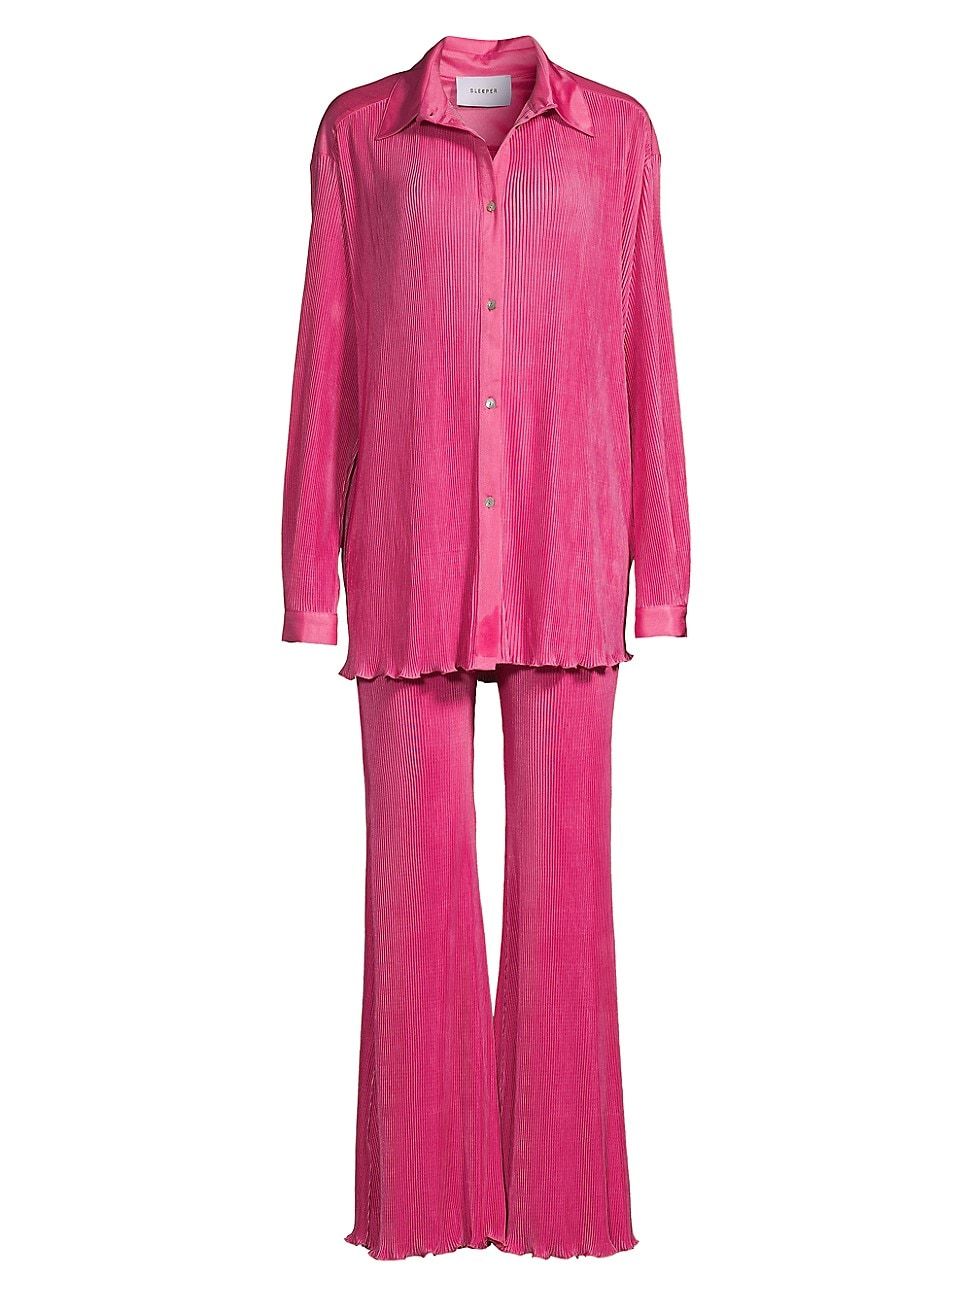 Sleeper Feather Trim Pajama Sets On Sale - Saks Fifth Avenue Designer ...